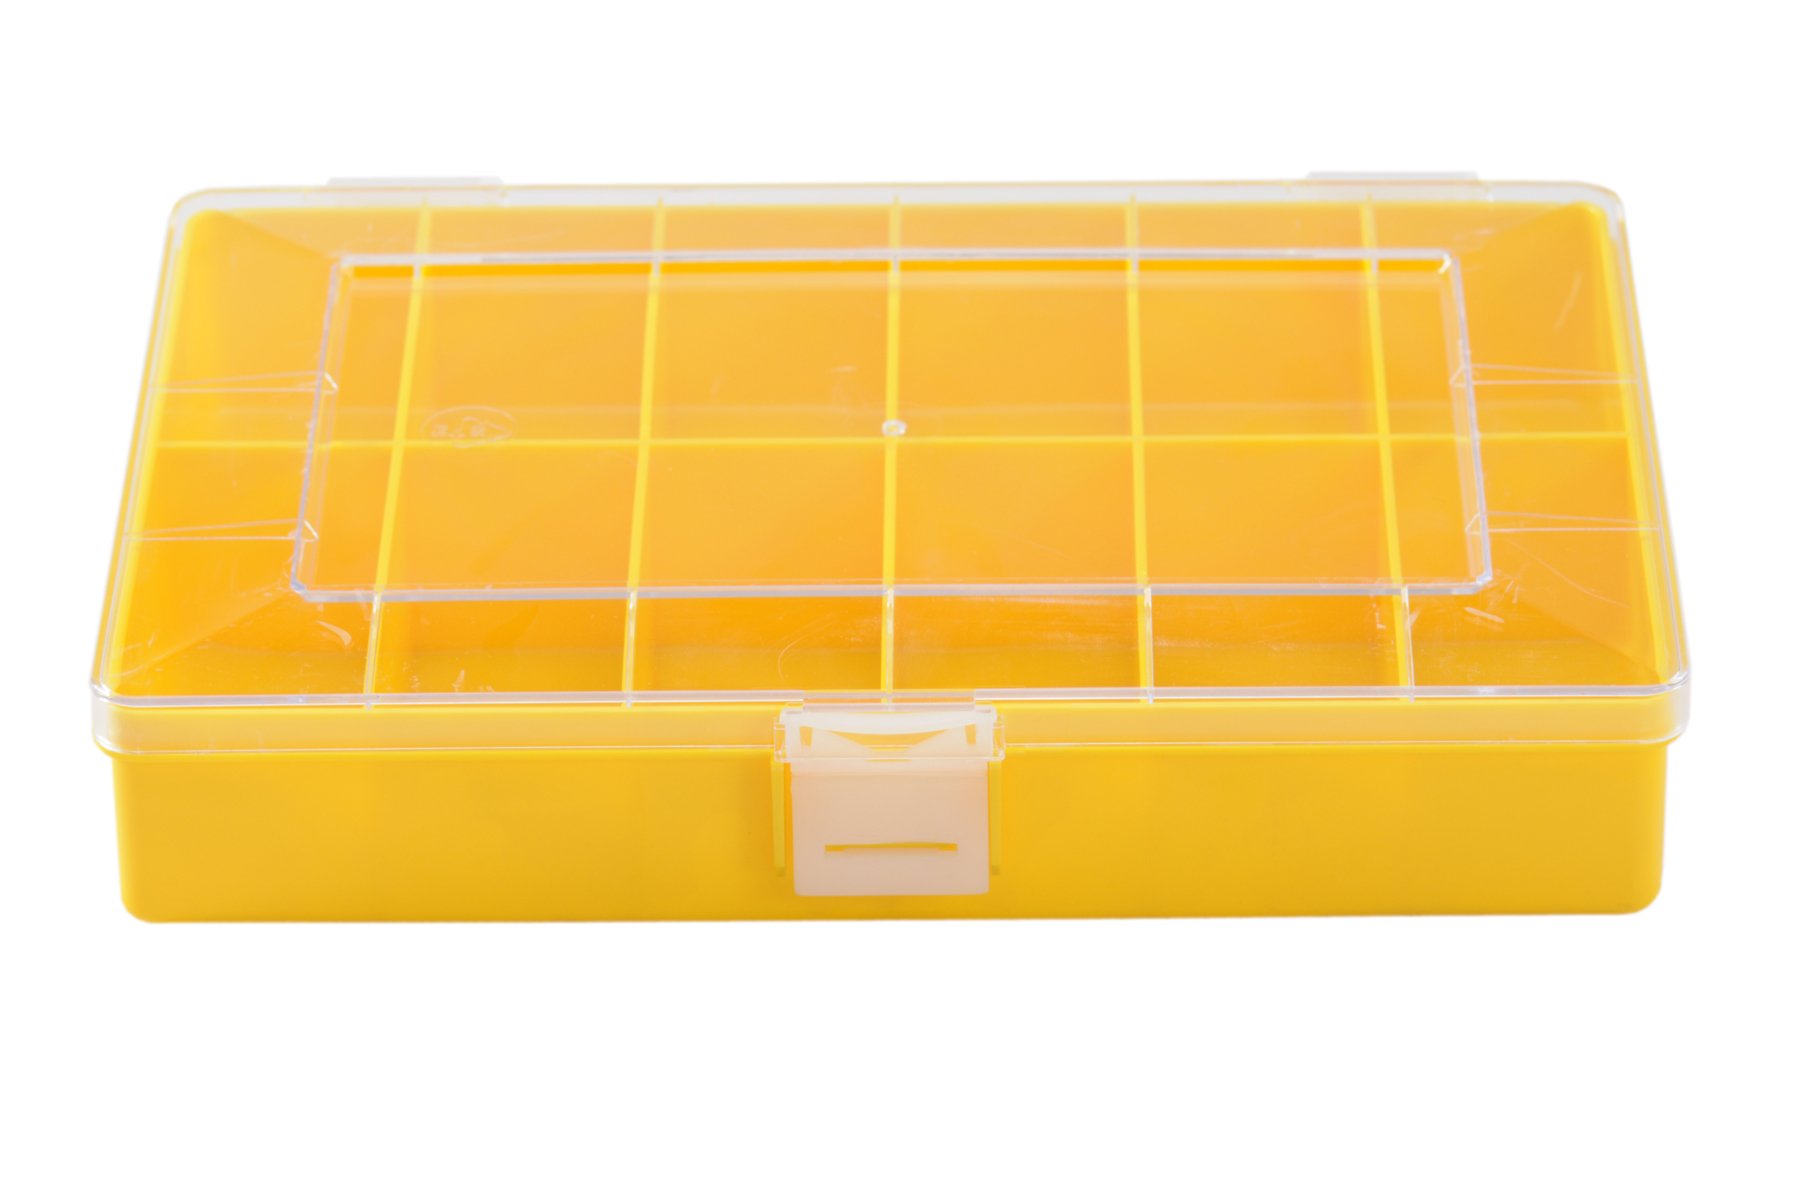 hünersdorff Sortimentskasten: stabile Sortierbox (PS-Compact) mit fester Fachaufteilung (12 Fächer), Sortierkasten-Maße: T170 x B250 x H46 mm, Made in Germany, gelb von hünersdorff